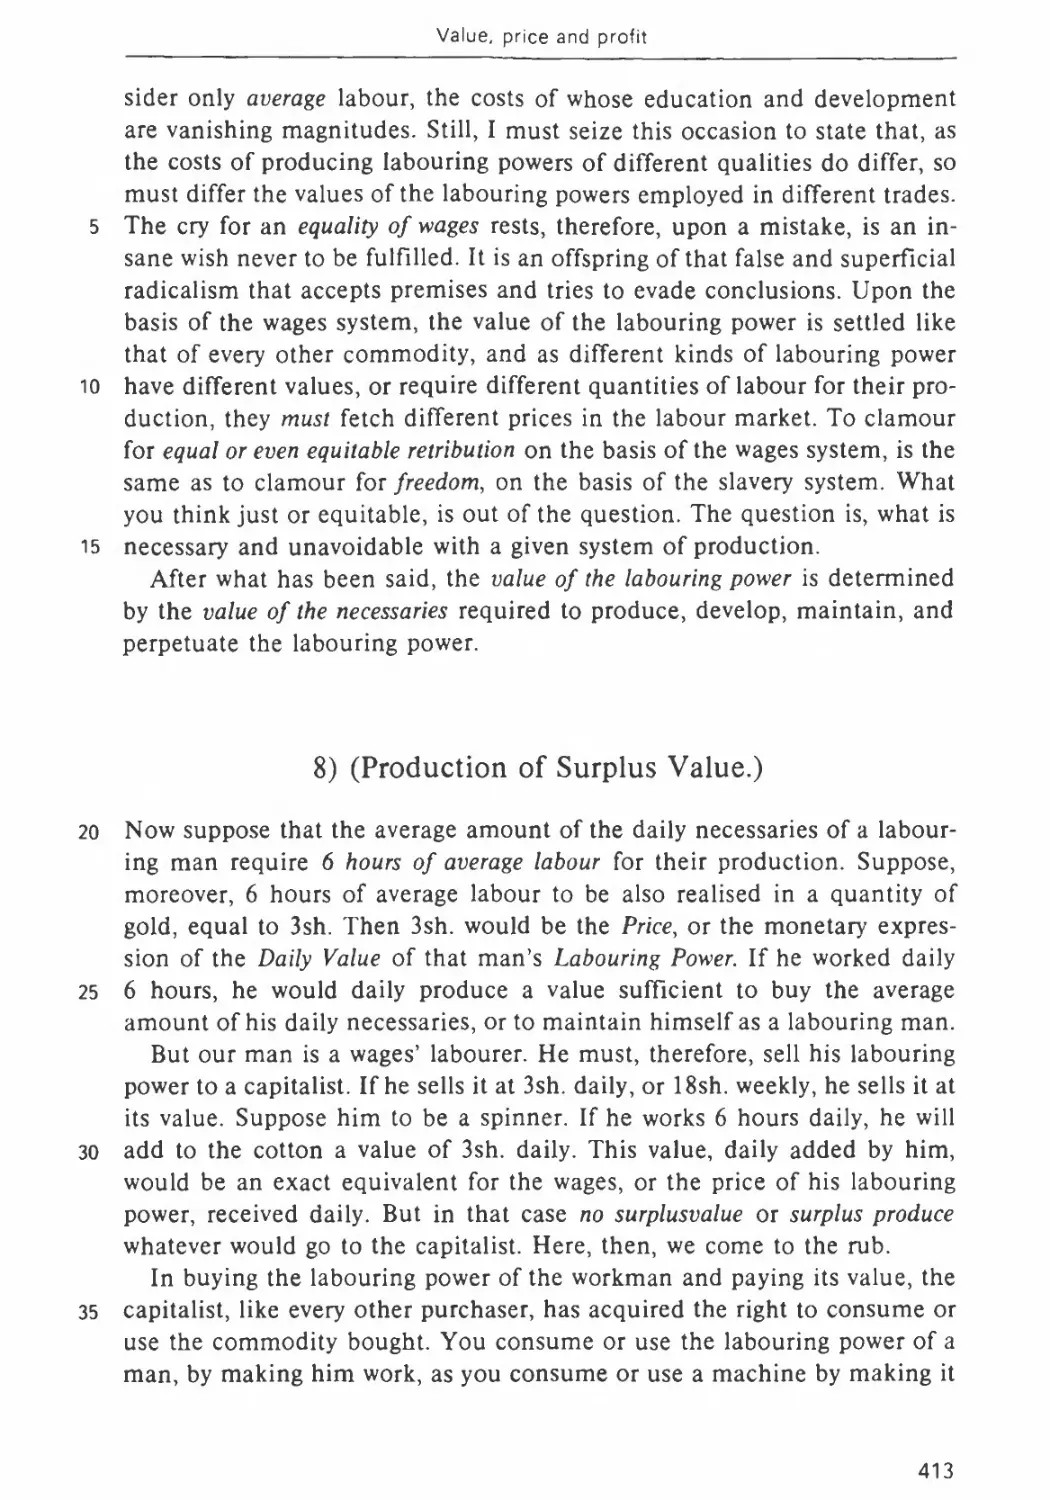 8. Production of Surplus Value